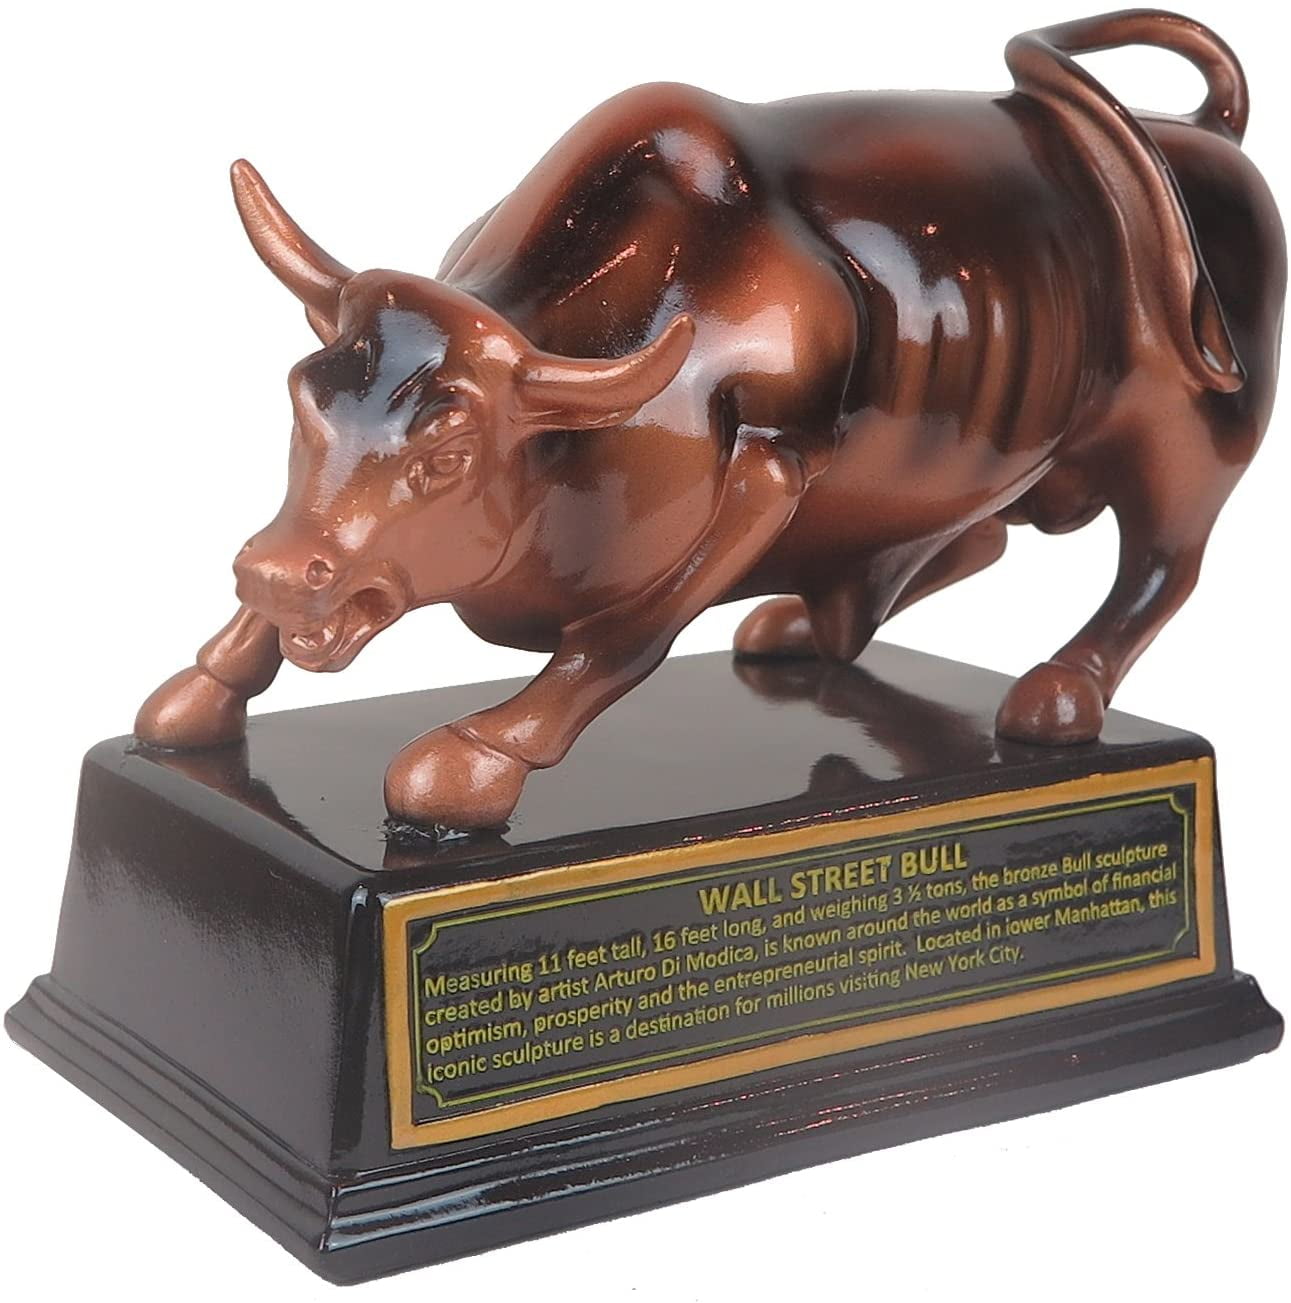 Wall Street Bull Ox Statue Stock Market Figurine Sculpture Home Office Décor 